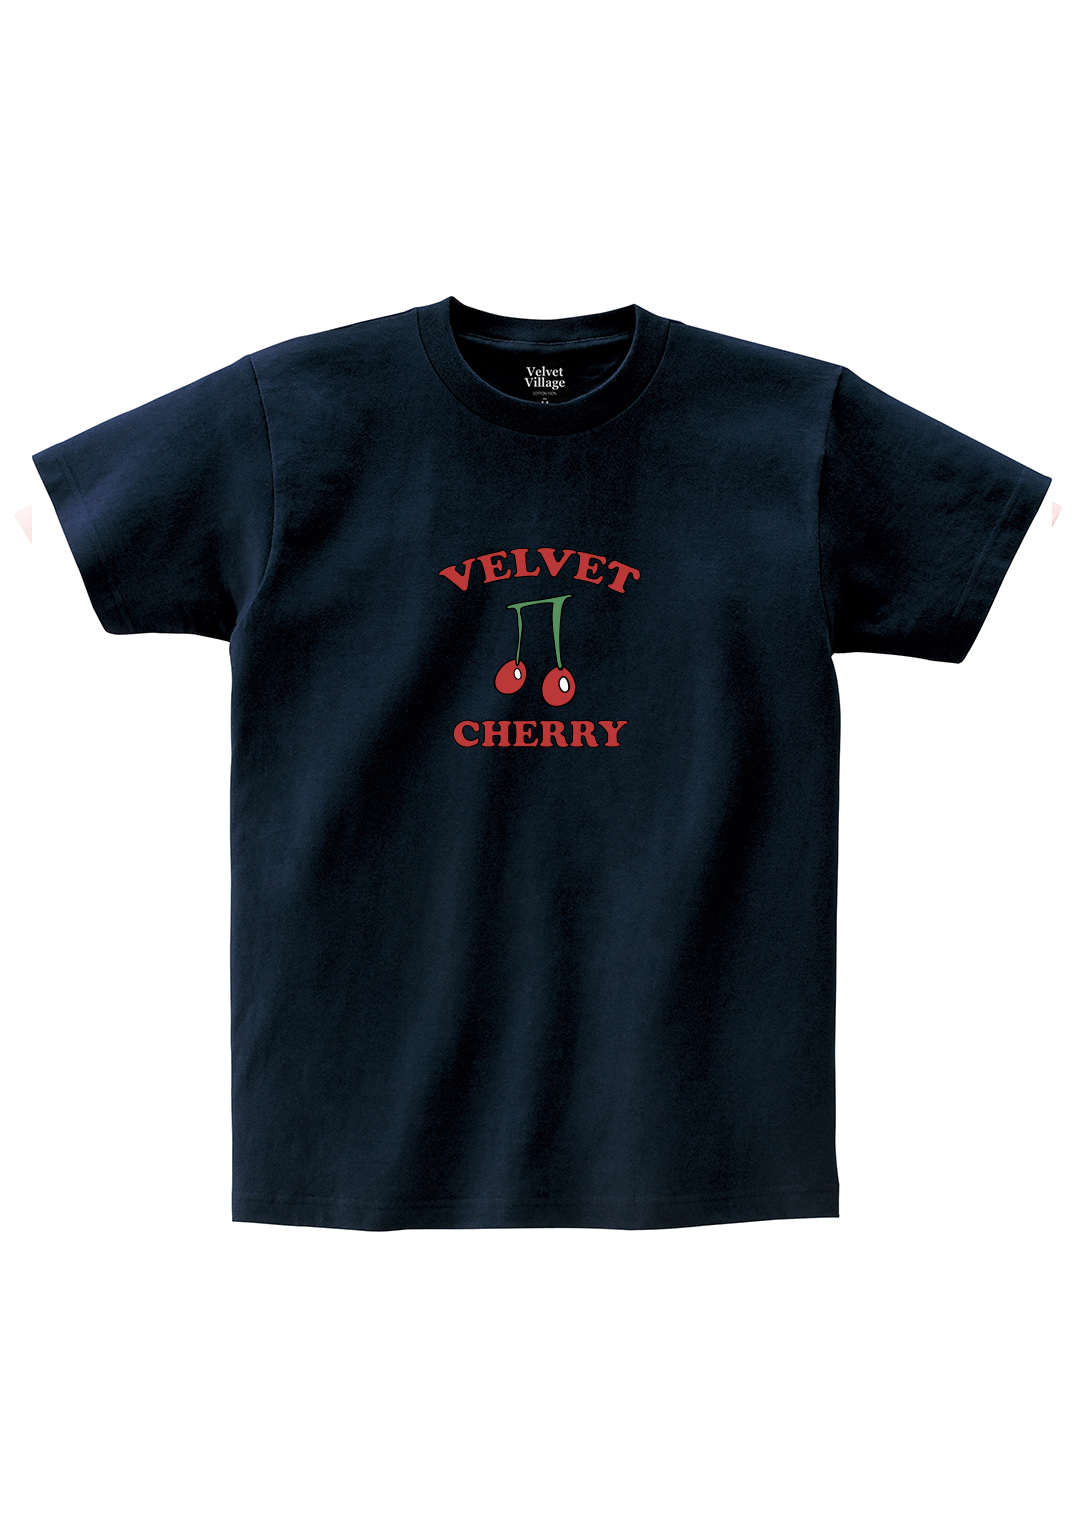 Cherry T-shirt (Navy)